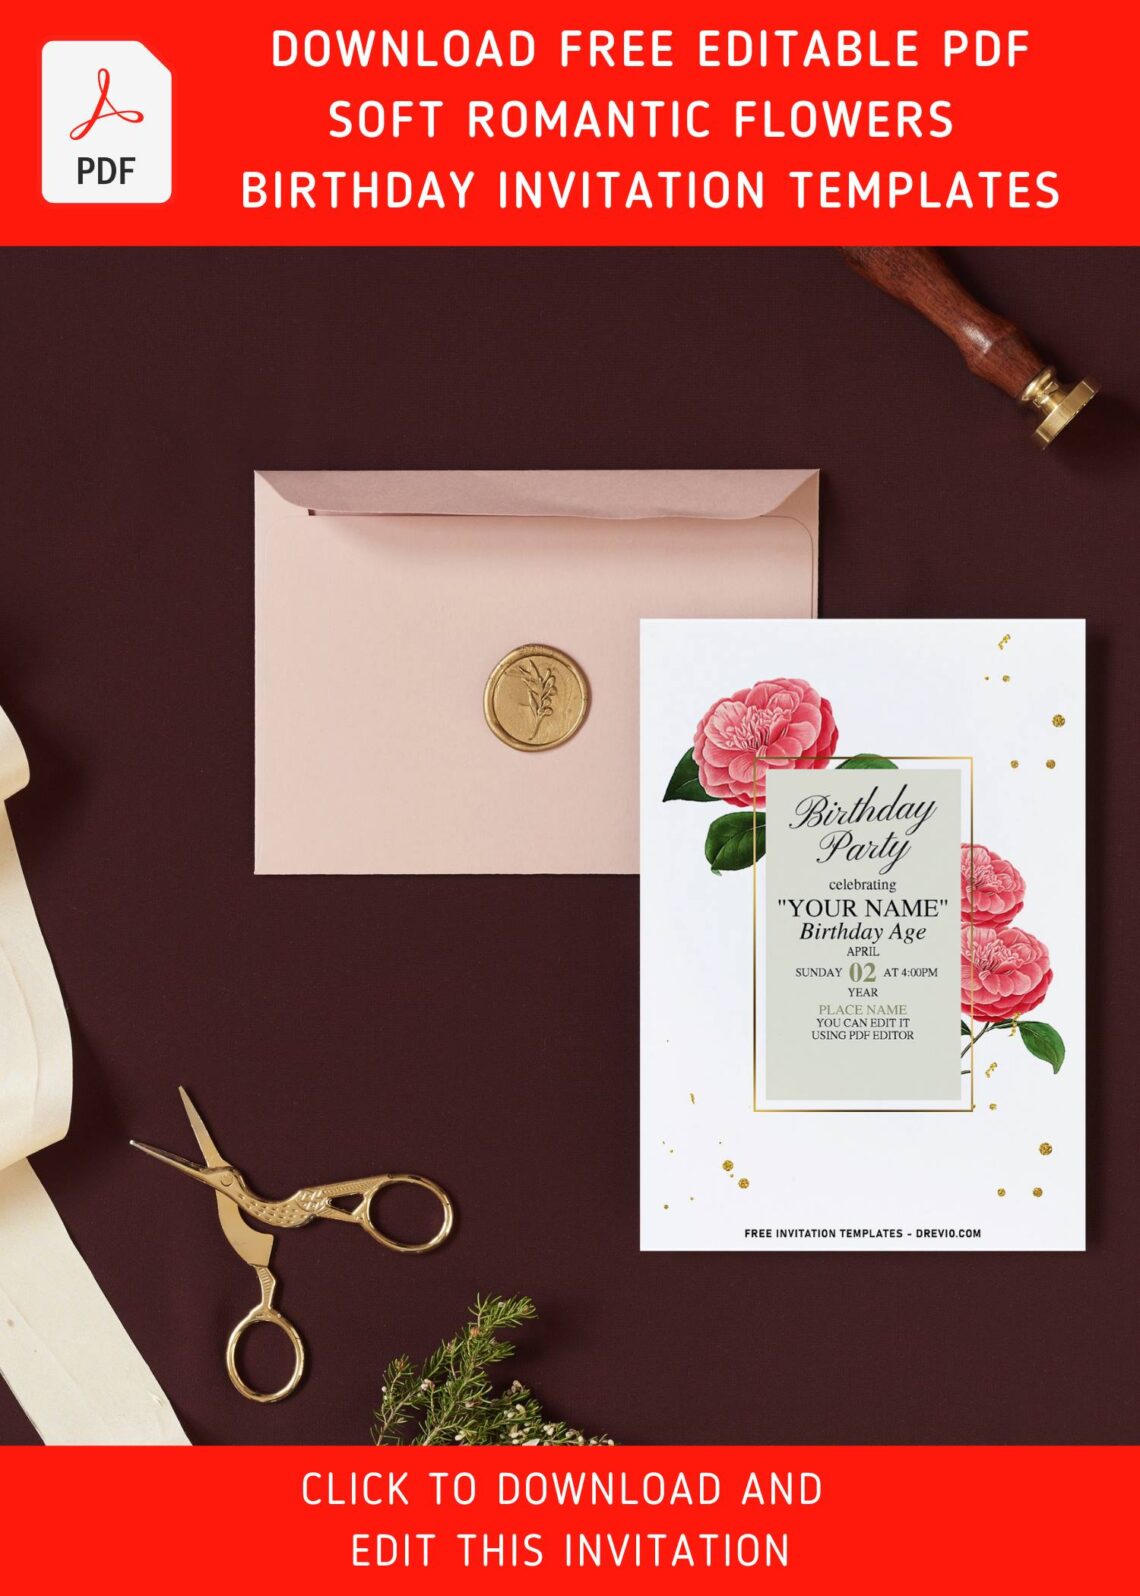 (Free Editable PDF) Sweet Romantic Camellia Minimalist Birthday Invitation Templates with editable text